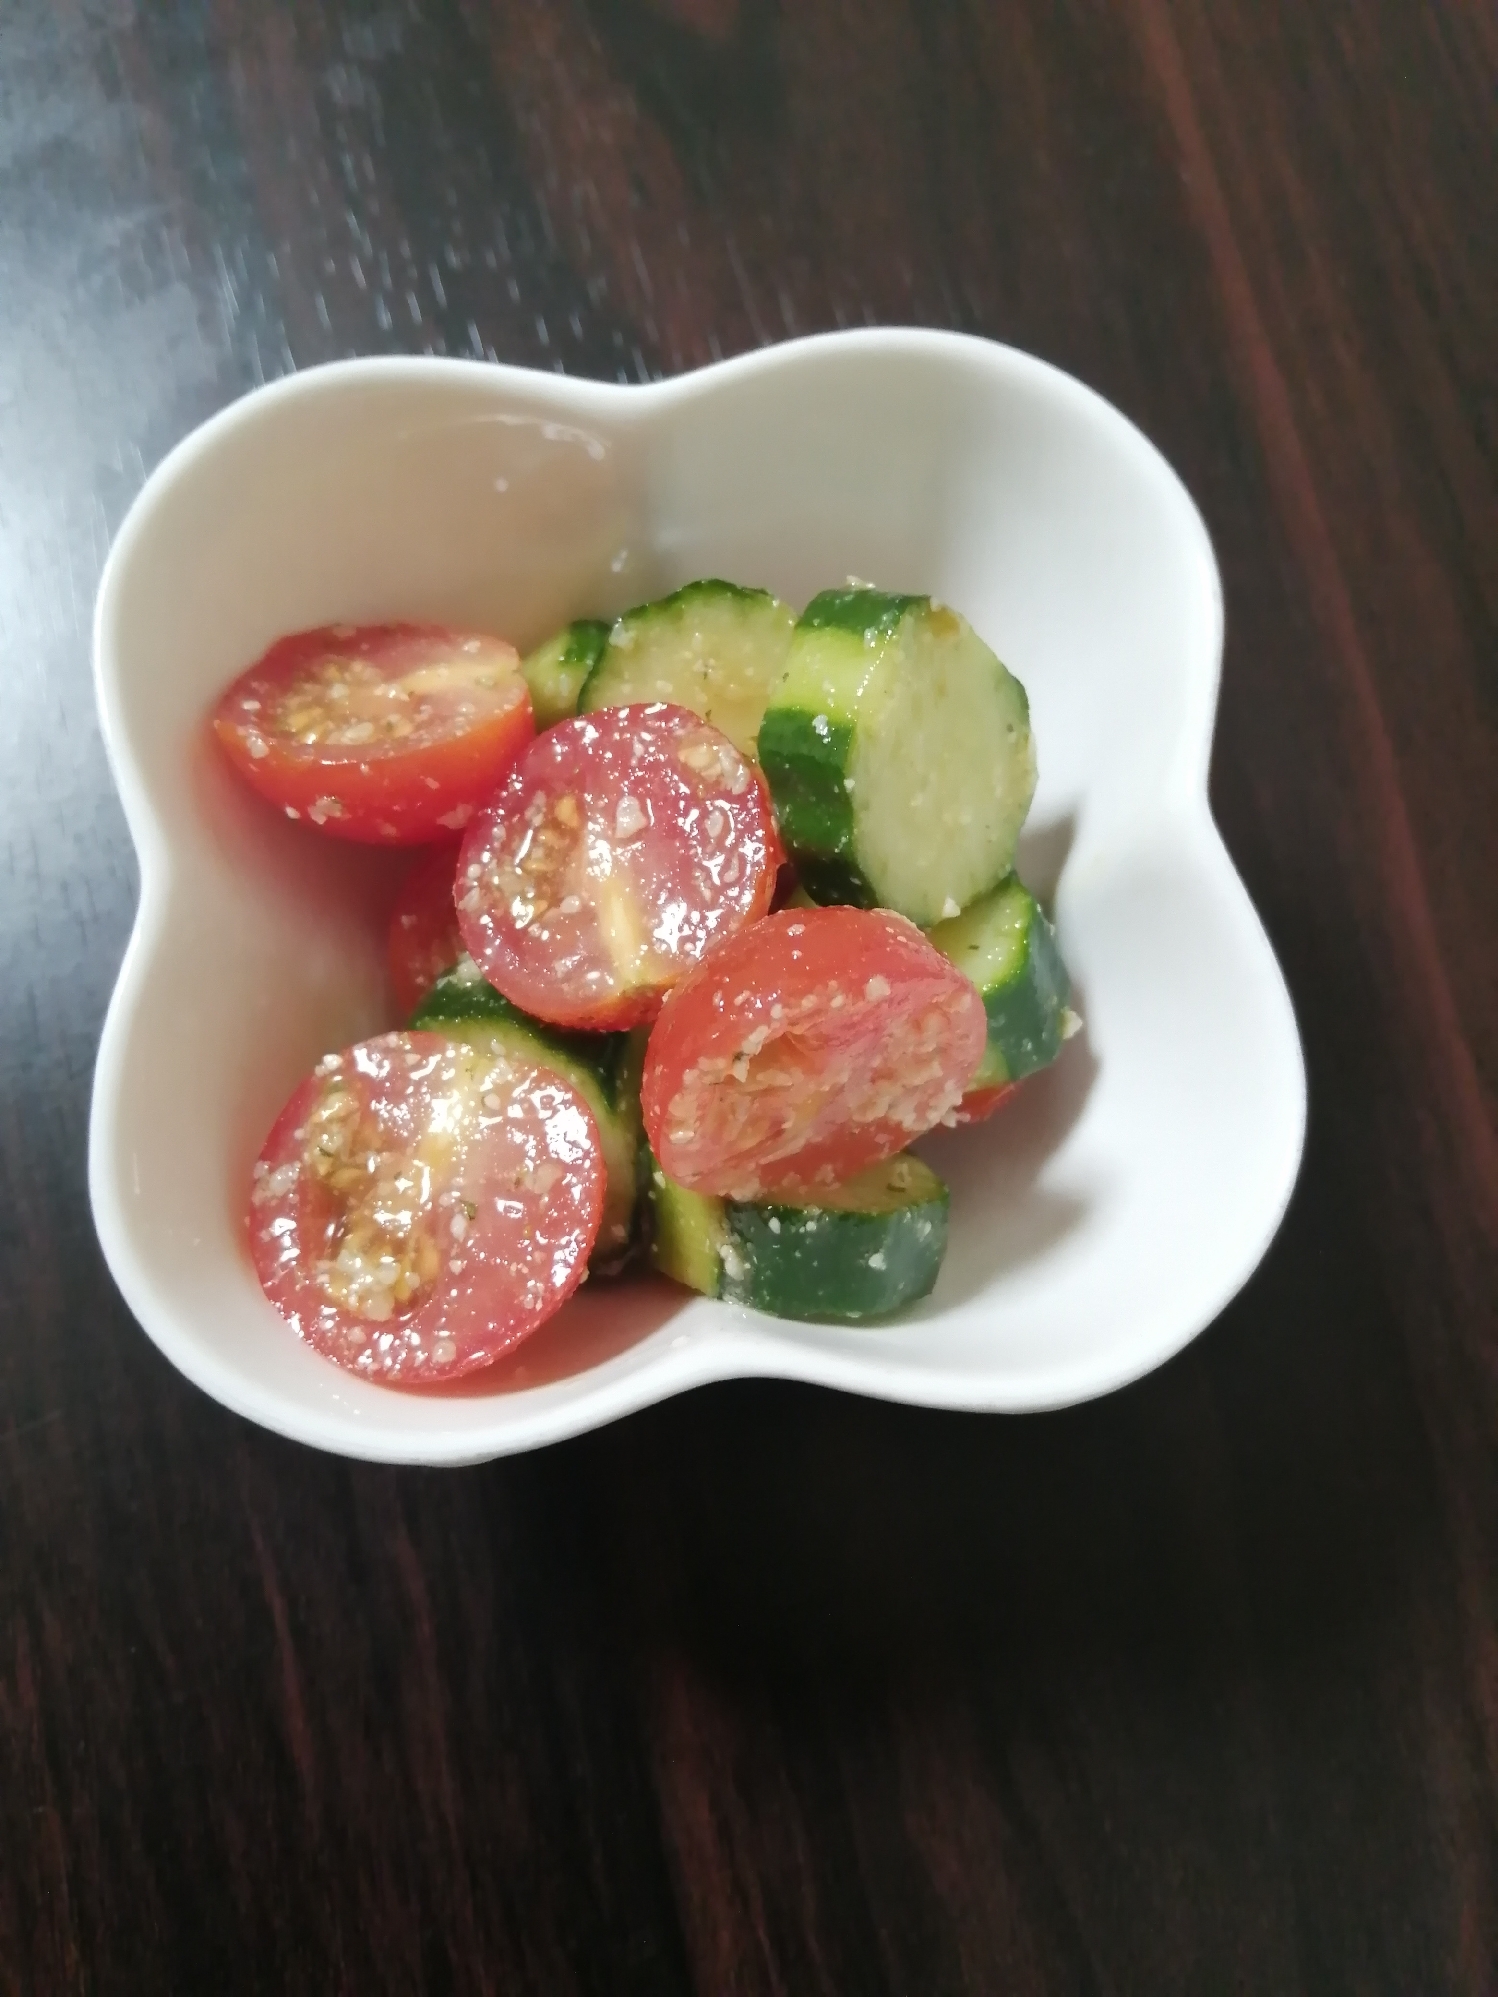 プチトマト(ミニトマト)きゅうりのイタリアンサラダ